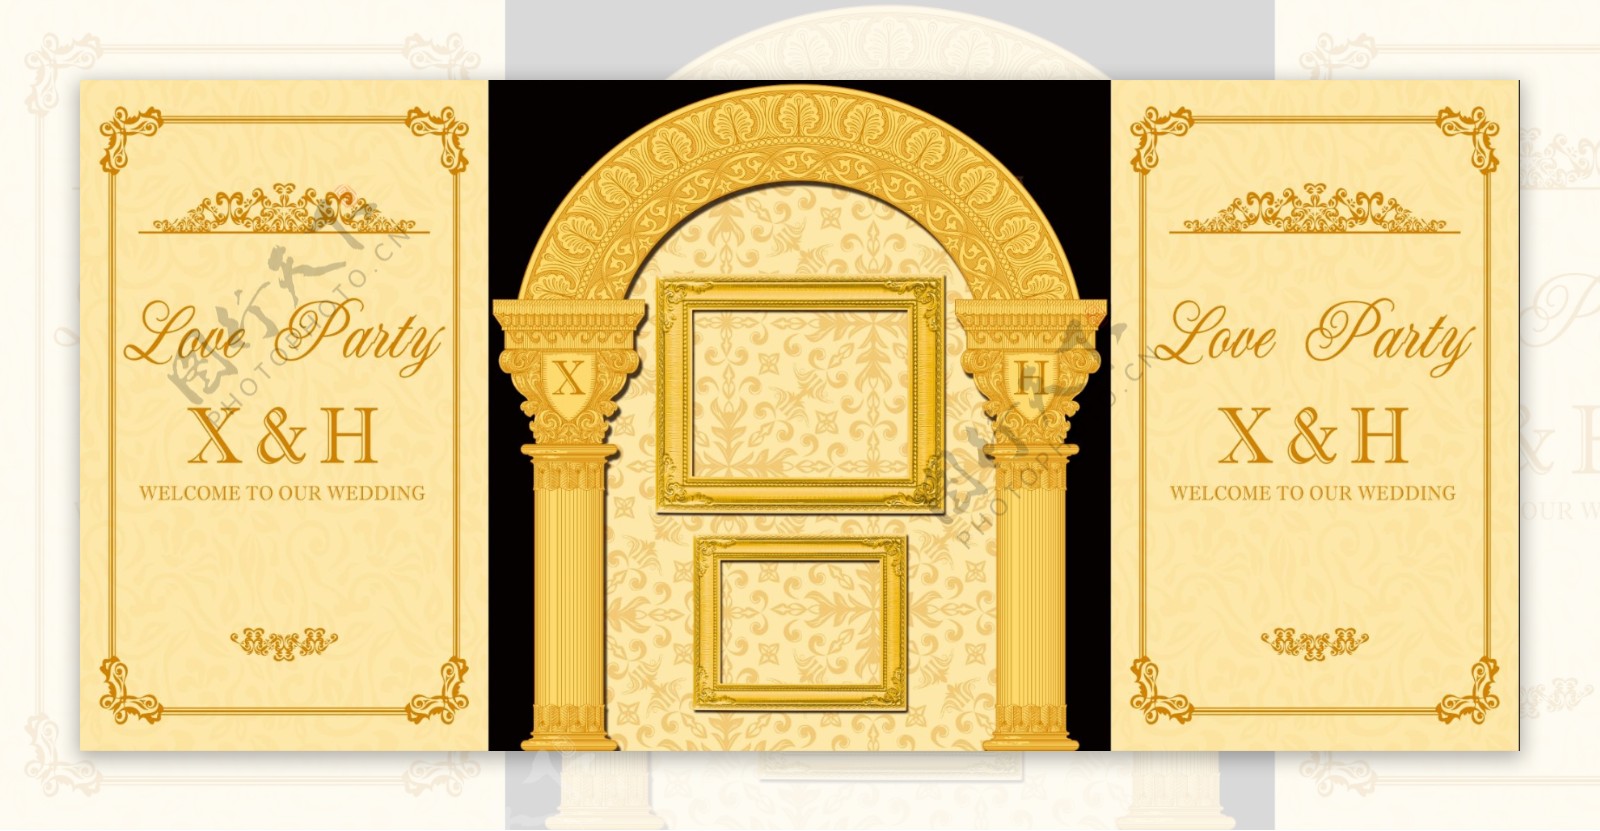 金色欧式风格婚礼效果图设计